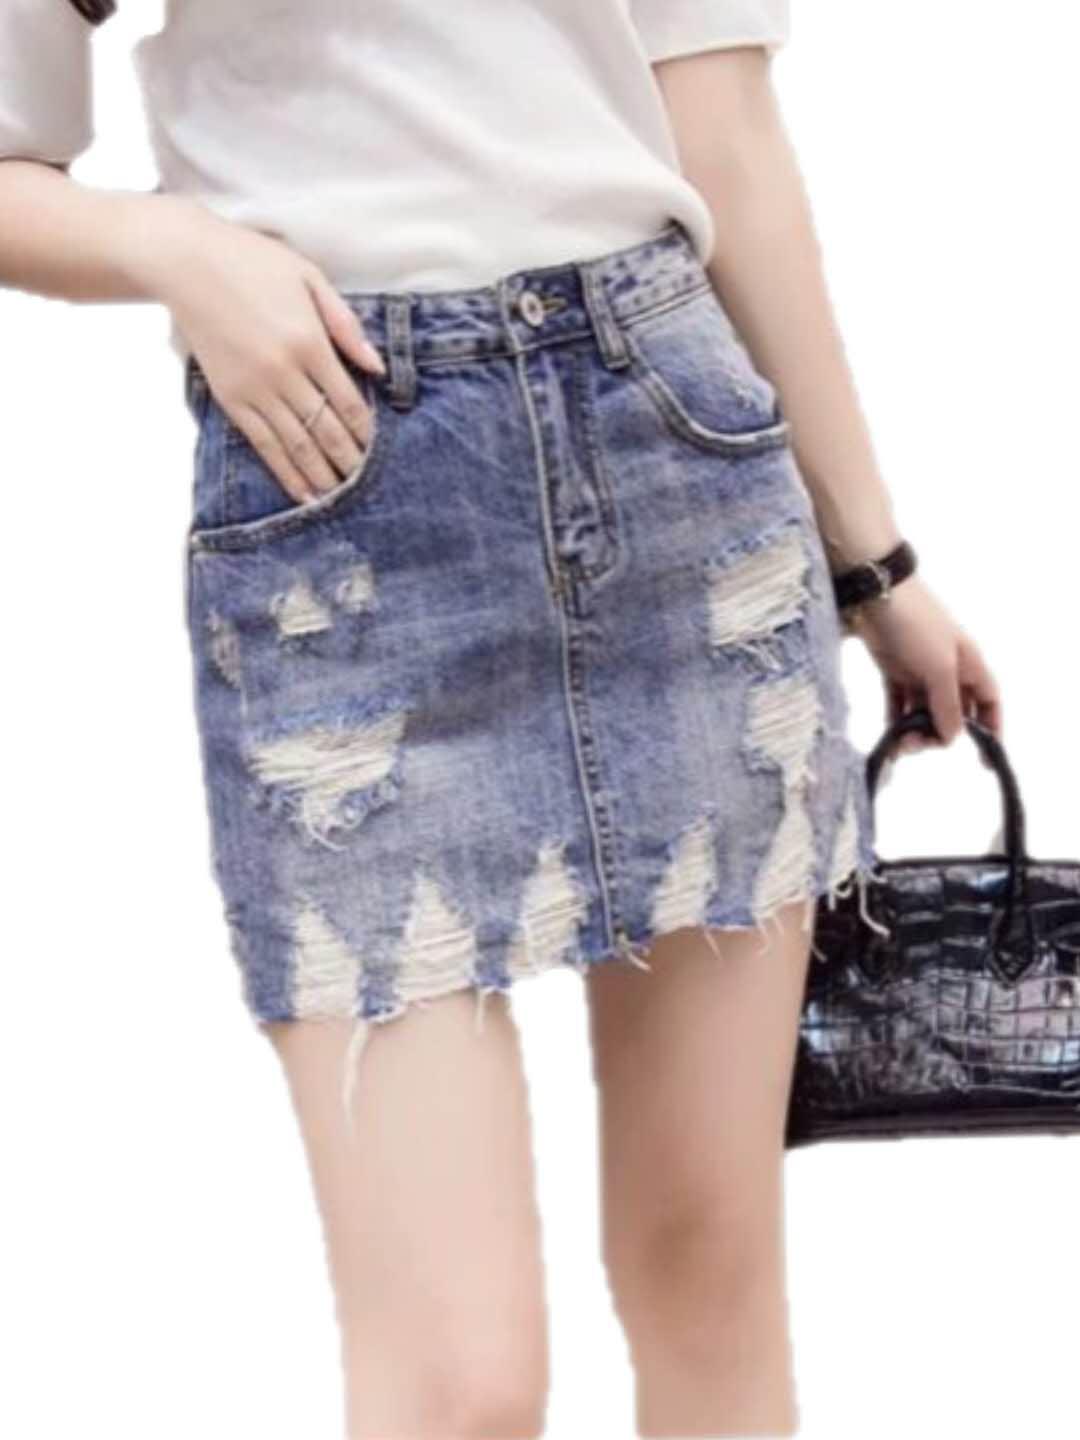 tattered skirt denim